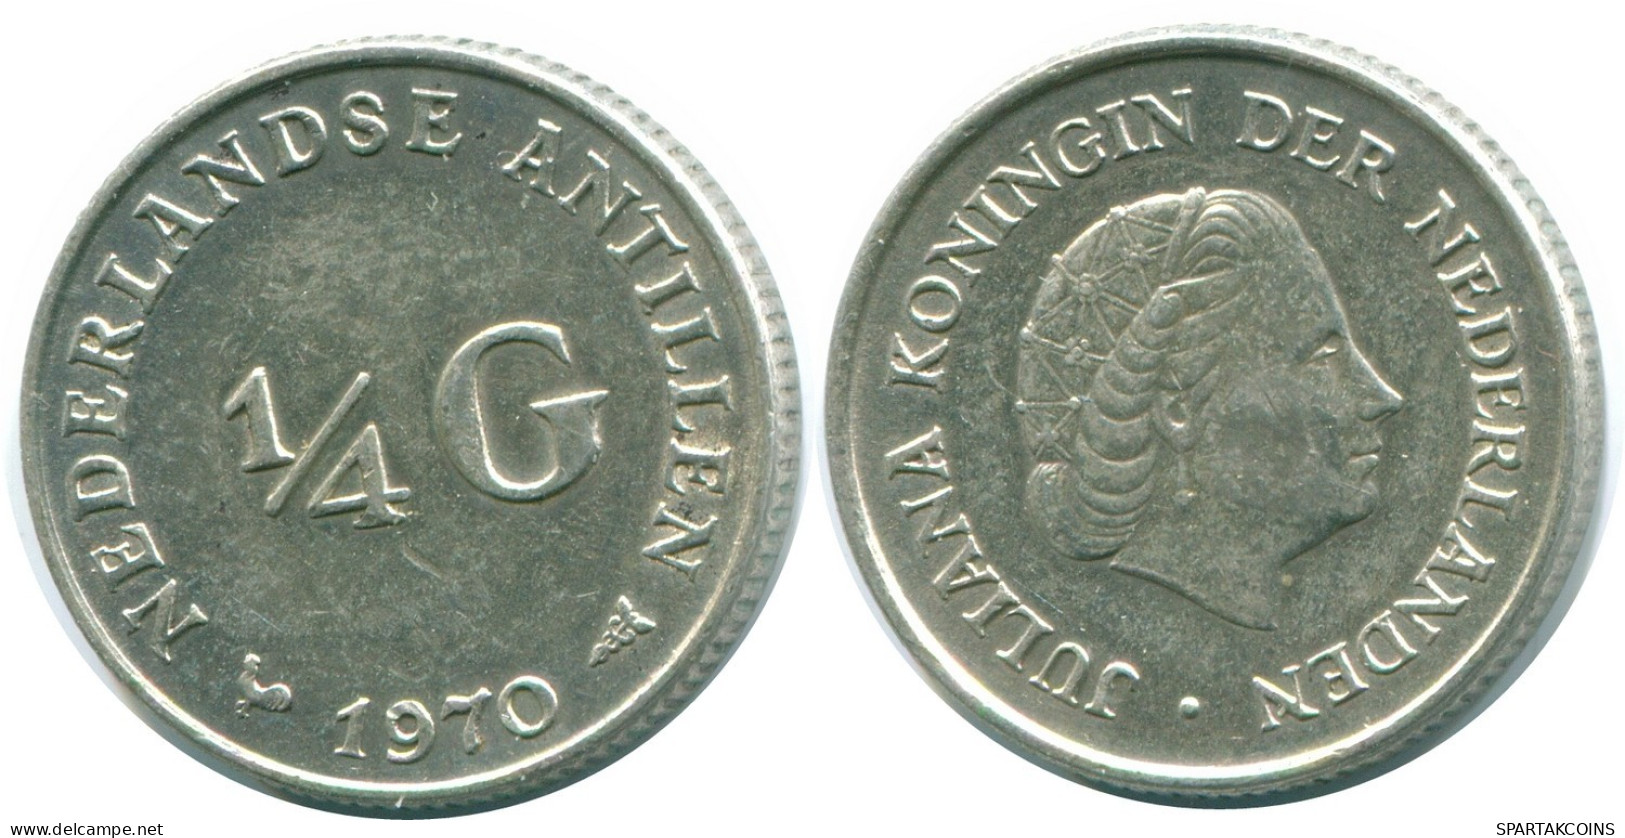 1/4 GULDEN 1970 NIEDERLÄNDISCHE ANTILLEN SILBER Koloniale Münze #NL11632.4.D.A - Nederlandse Antillen